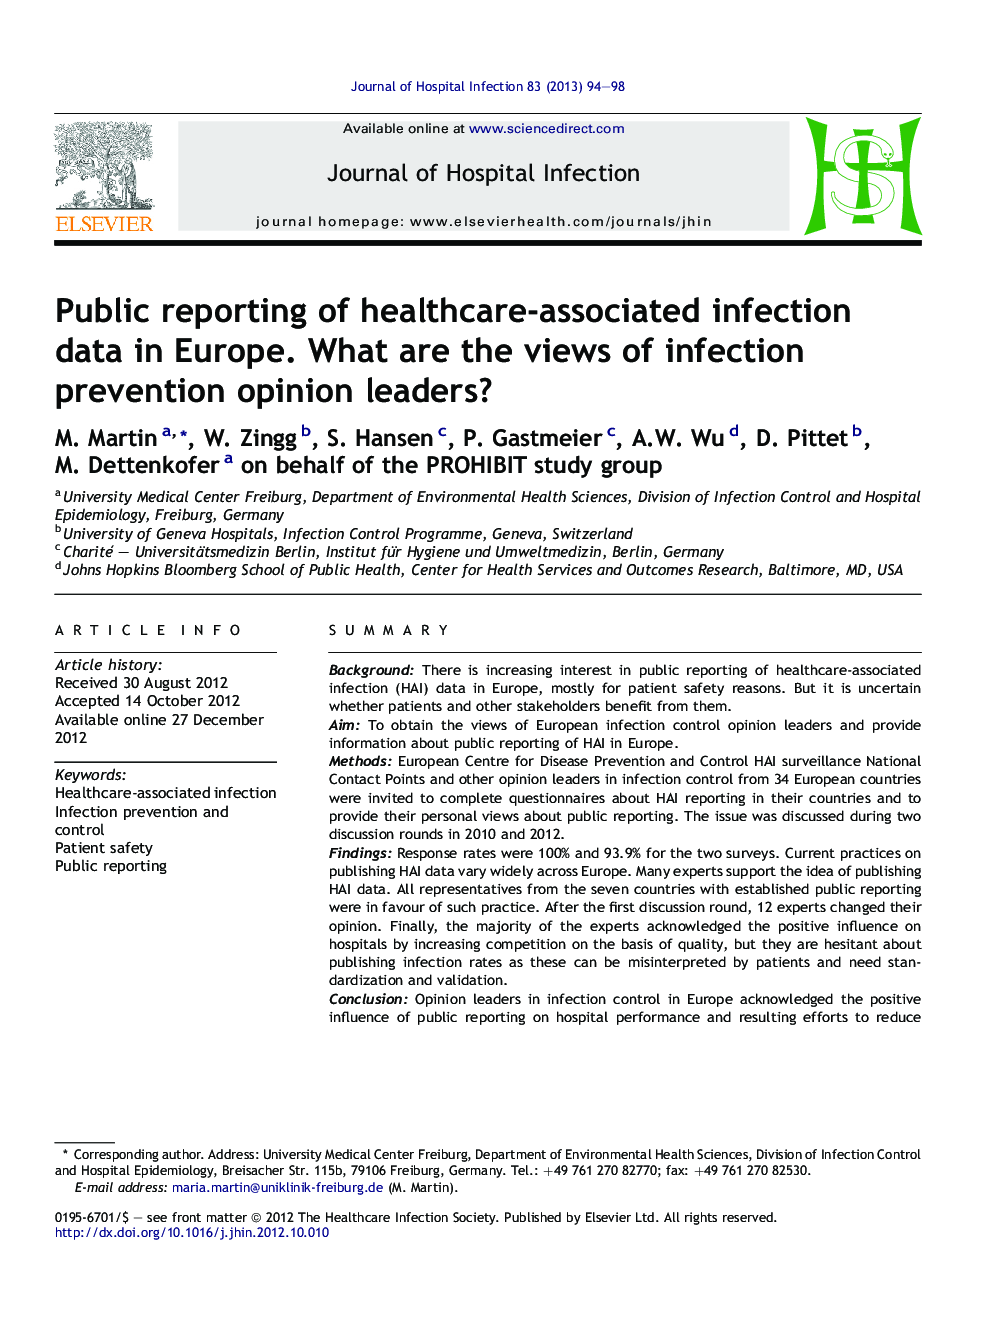 گزارش عمومی اطلاعات مربوط به آلودگی مربوط به مراقبت های بهداشتی در اروپا. دیدگاه های رهبران افکار پیشگیری از عفونت چیست؟ 